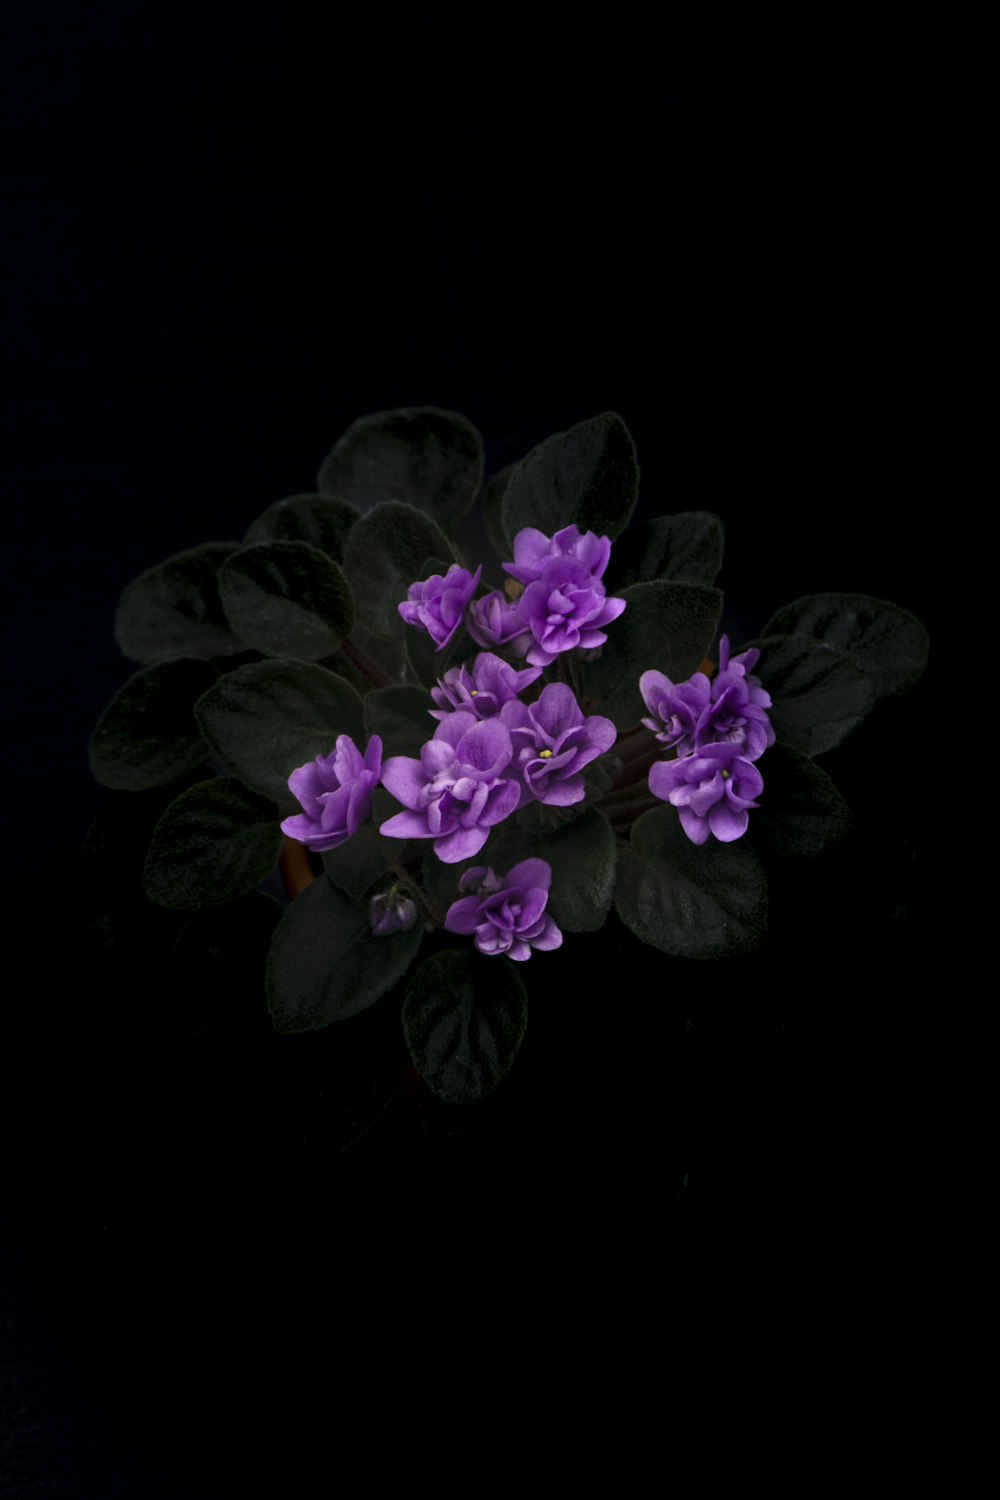 fotografia ravvicinata di un fiore dai petali viola